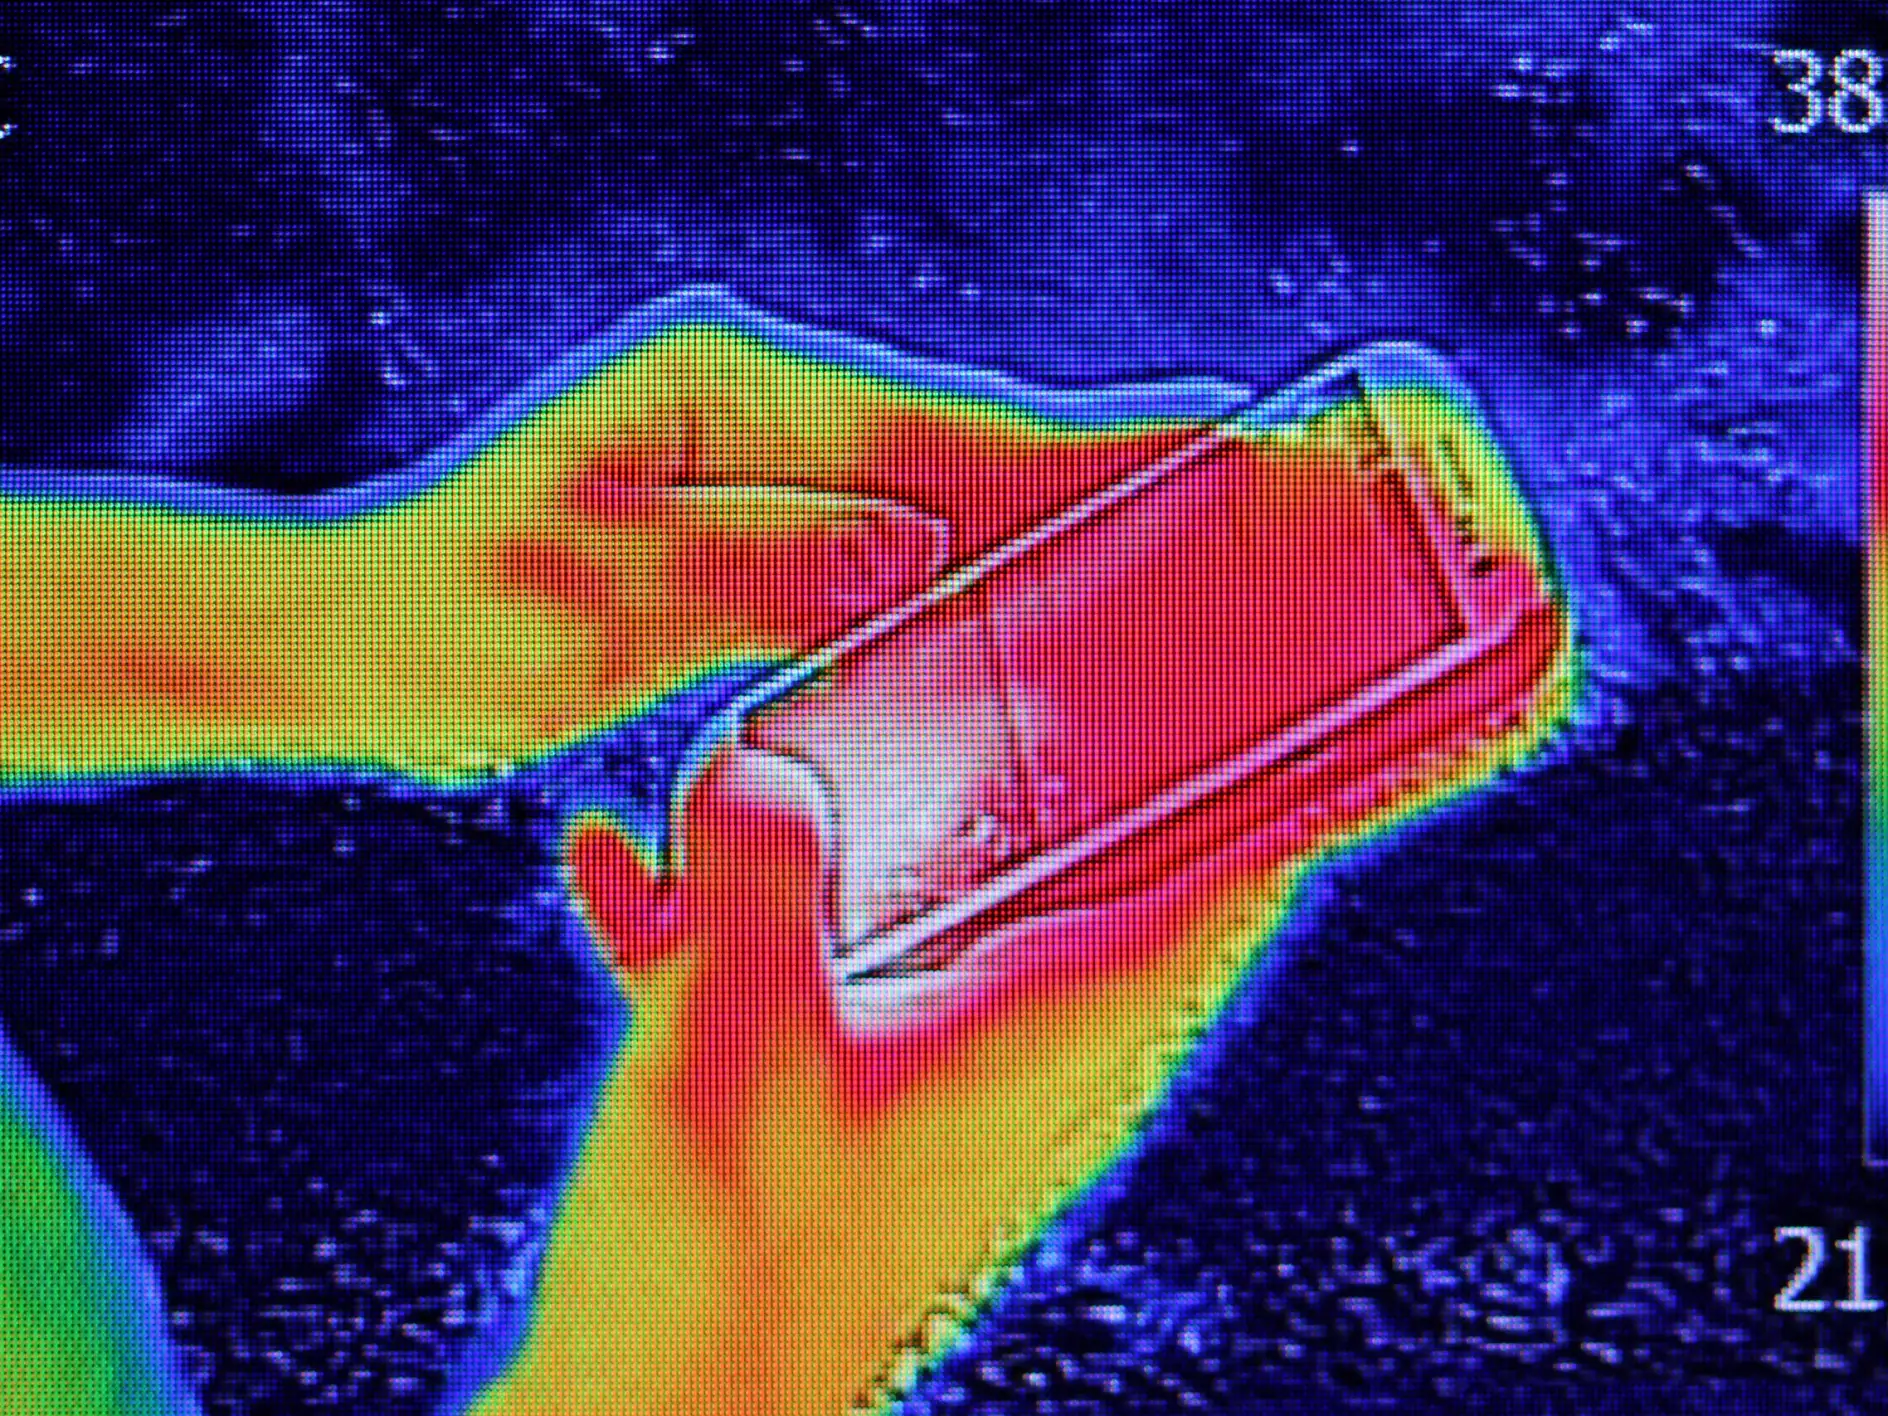 Infračervený snímek ukazující vyzařované teplo, když mladá dívka použila chytrý telefon nebo mobilní telefon